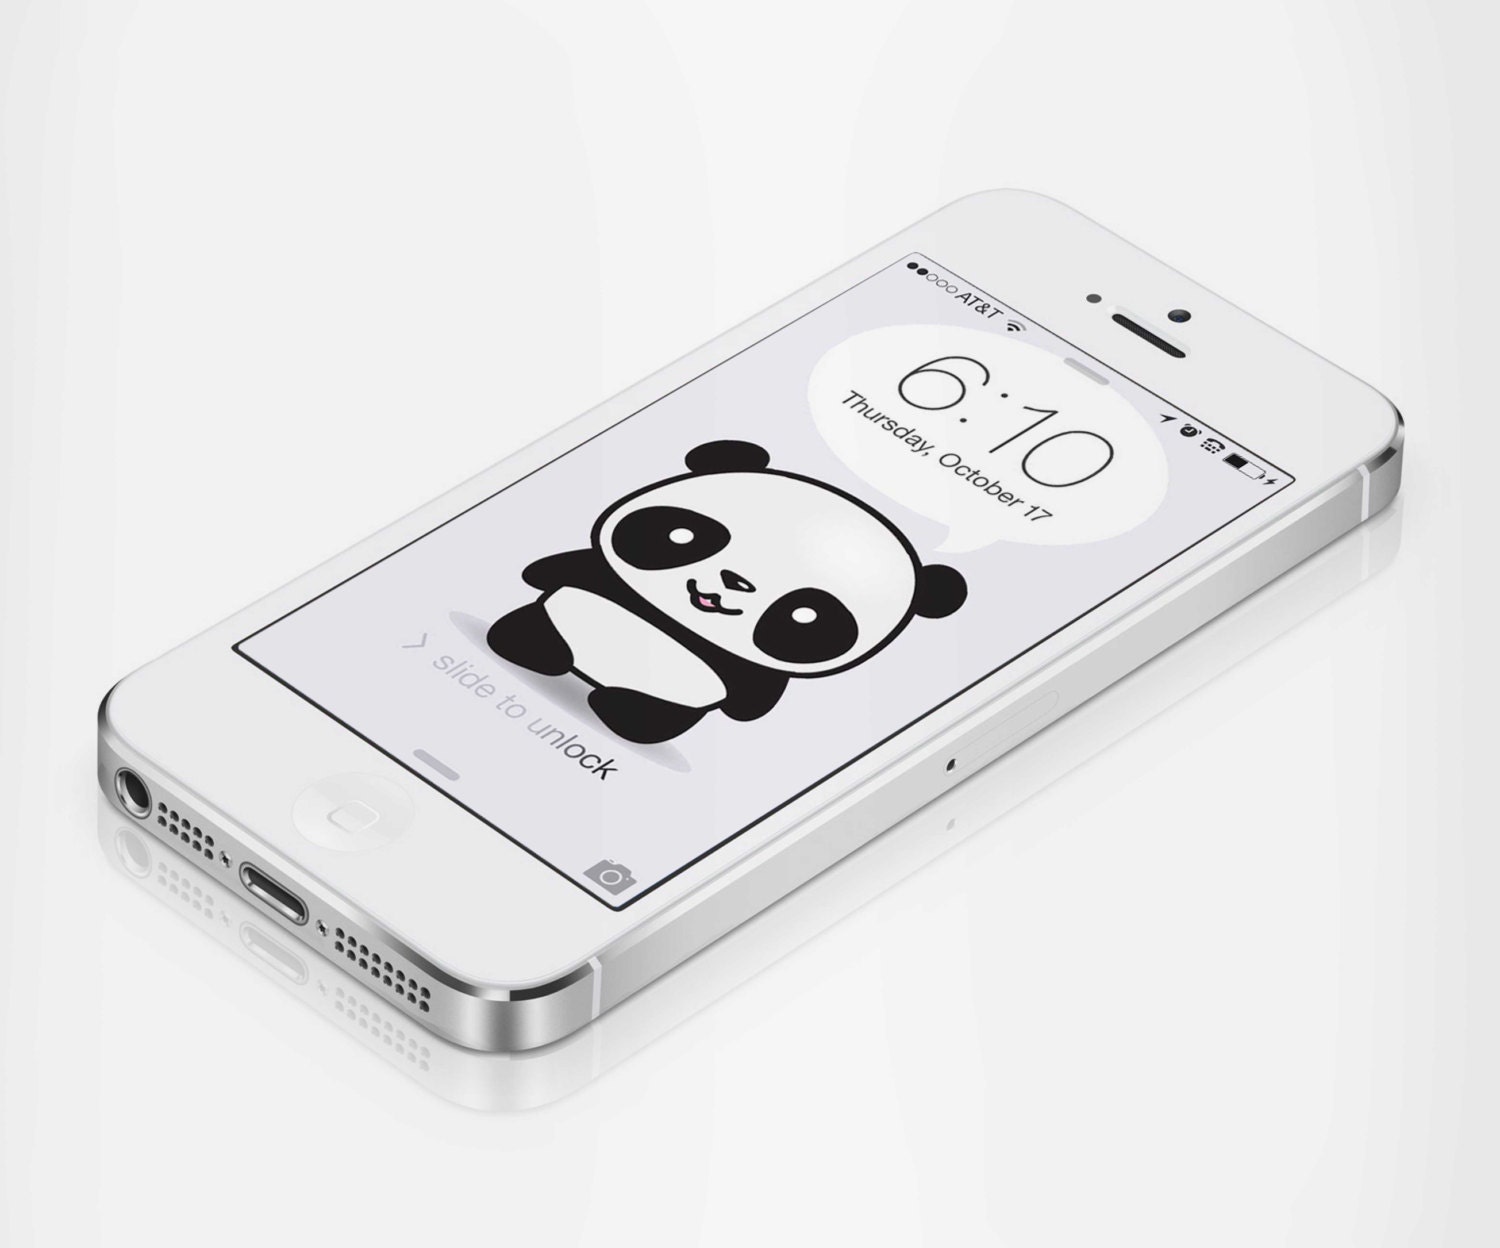 Panda So Cute.  Cute panda wallpaper, Wallpaper iphone cute, Kawaii  wallpaper